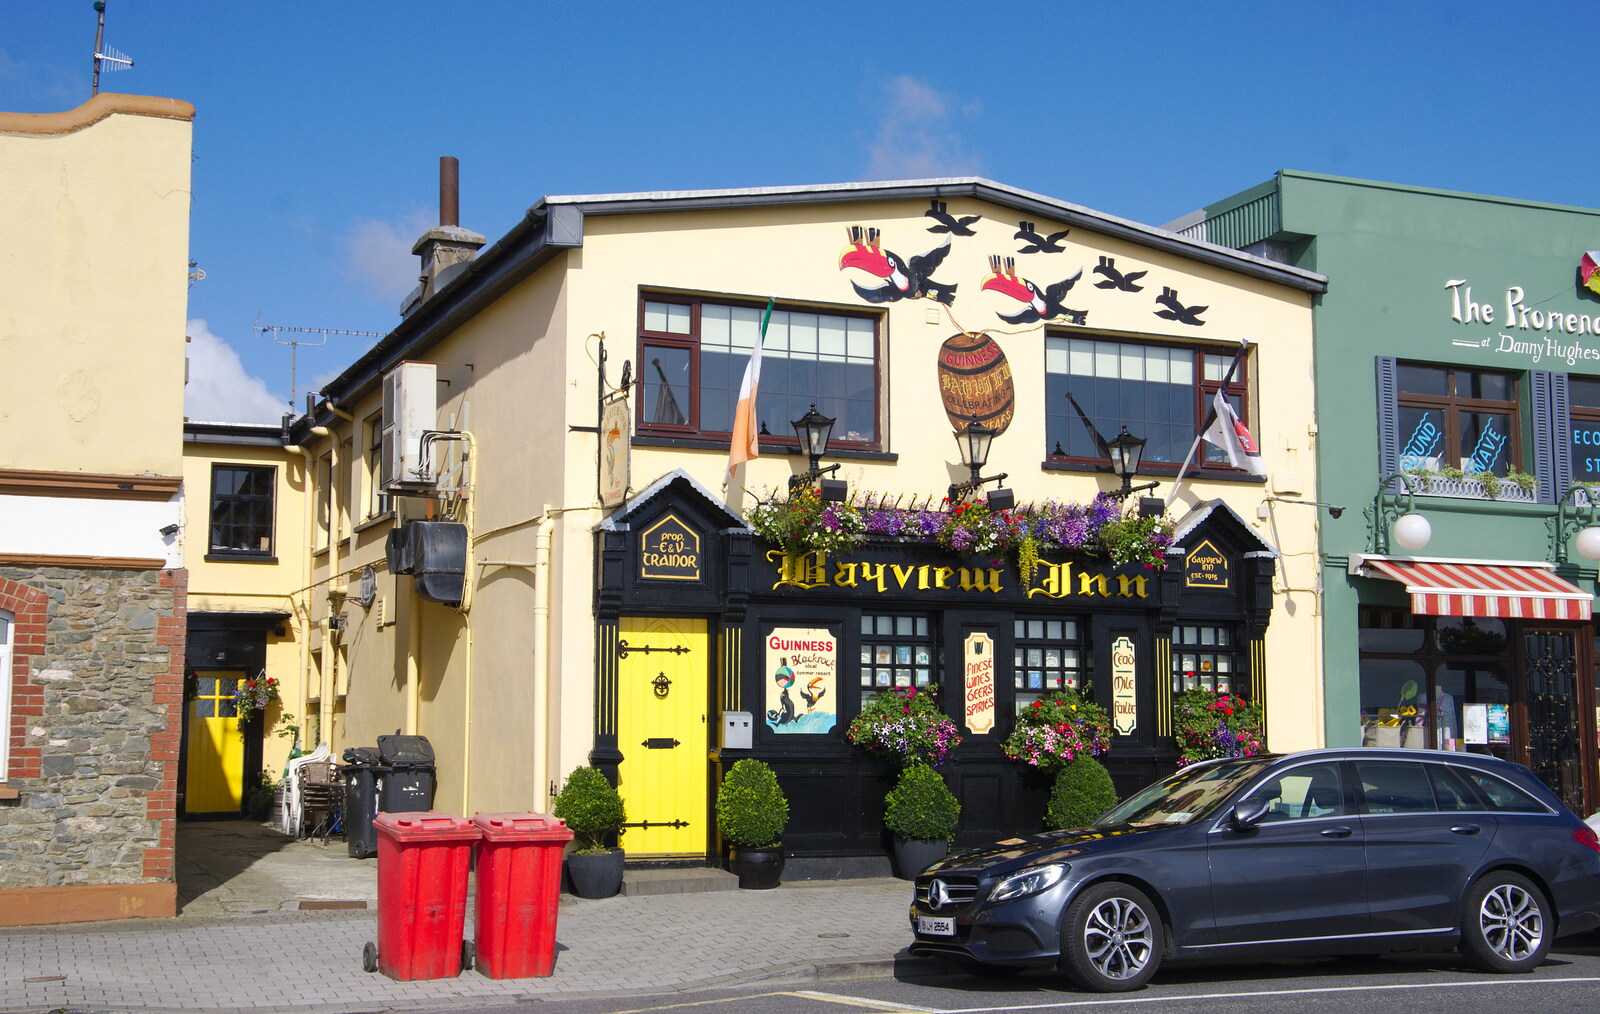 The colourful Bayview Inn from The Fleadh Cheoil na hÉireann, Droichead Átha, Co. Louth, Ireland - 13th August 2019